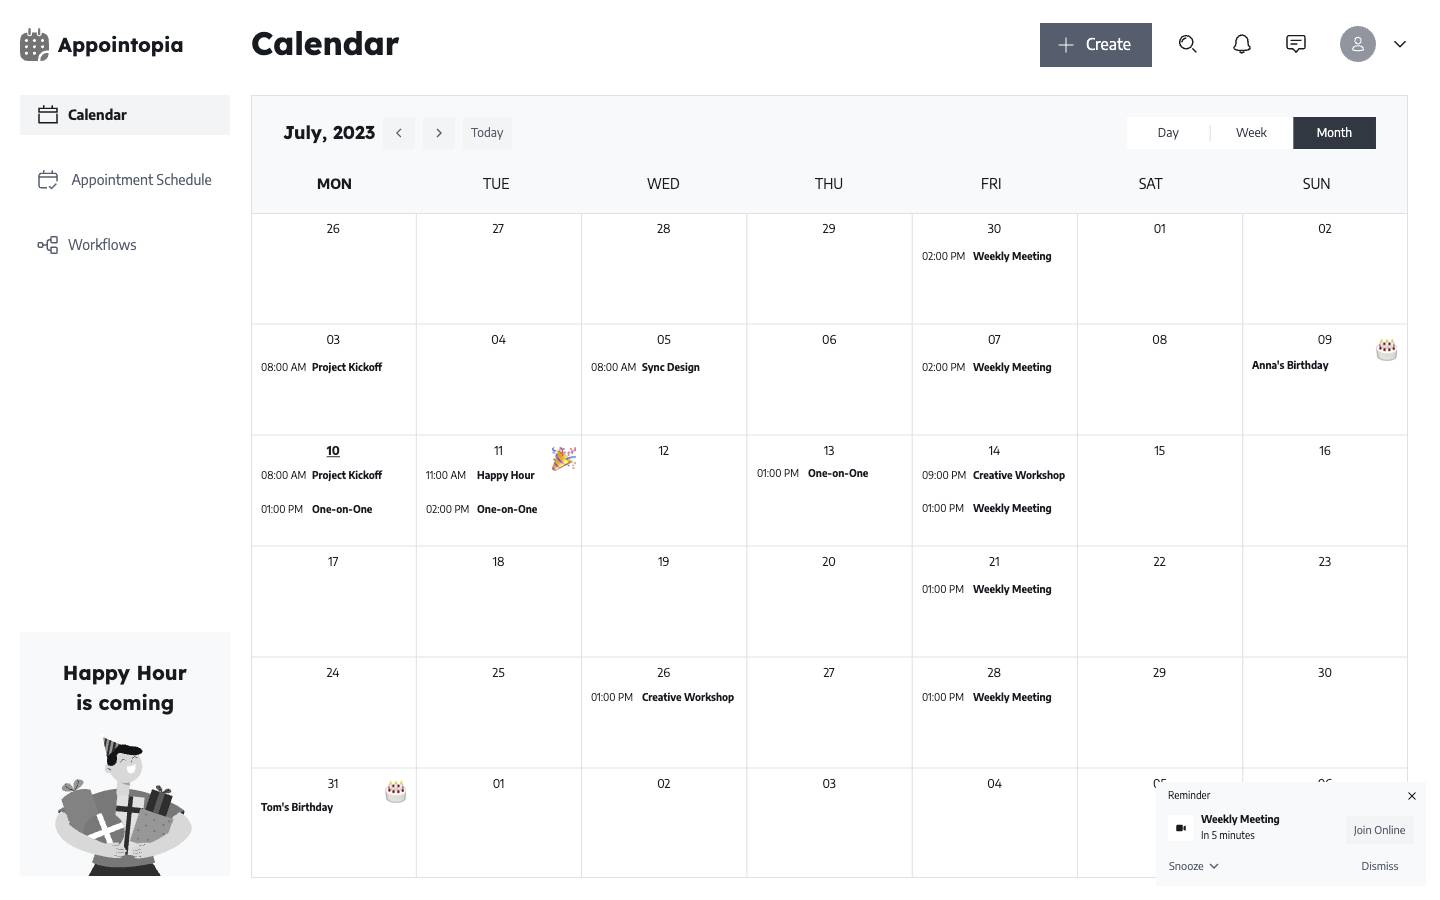 Calendar - Month view